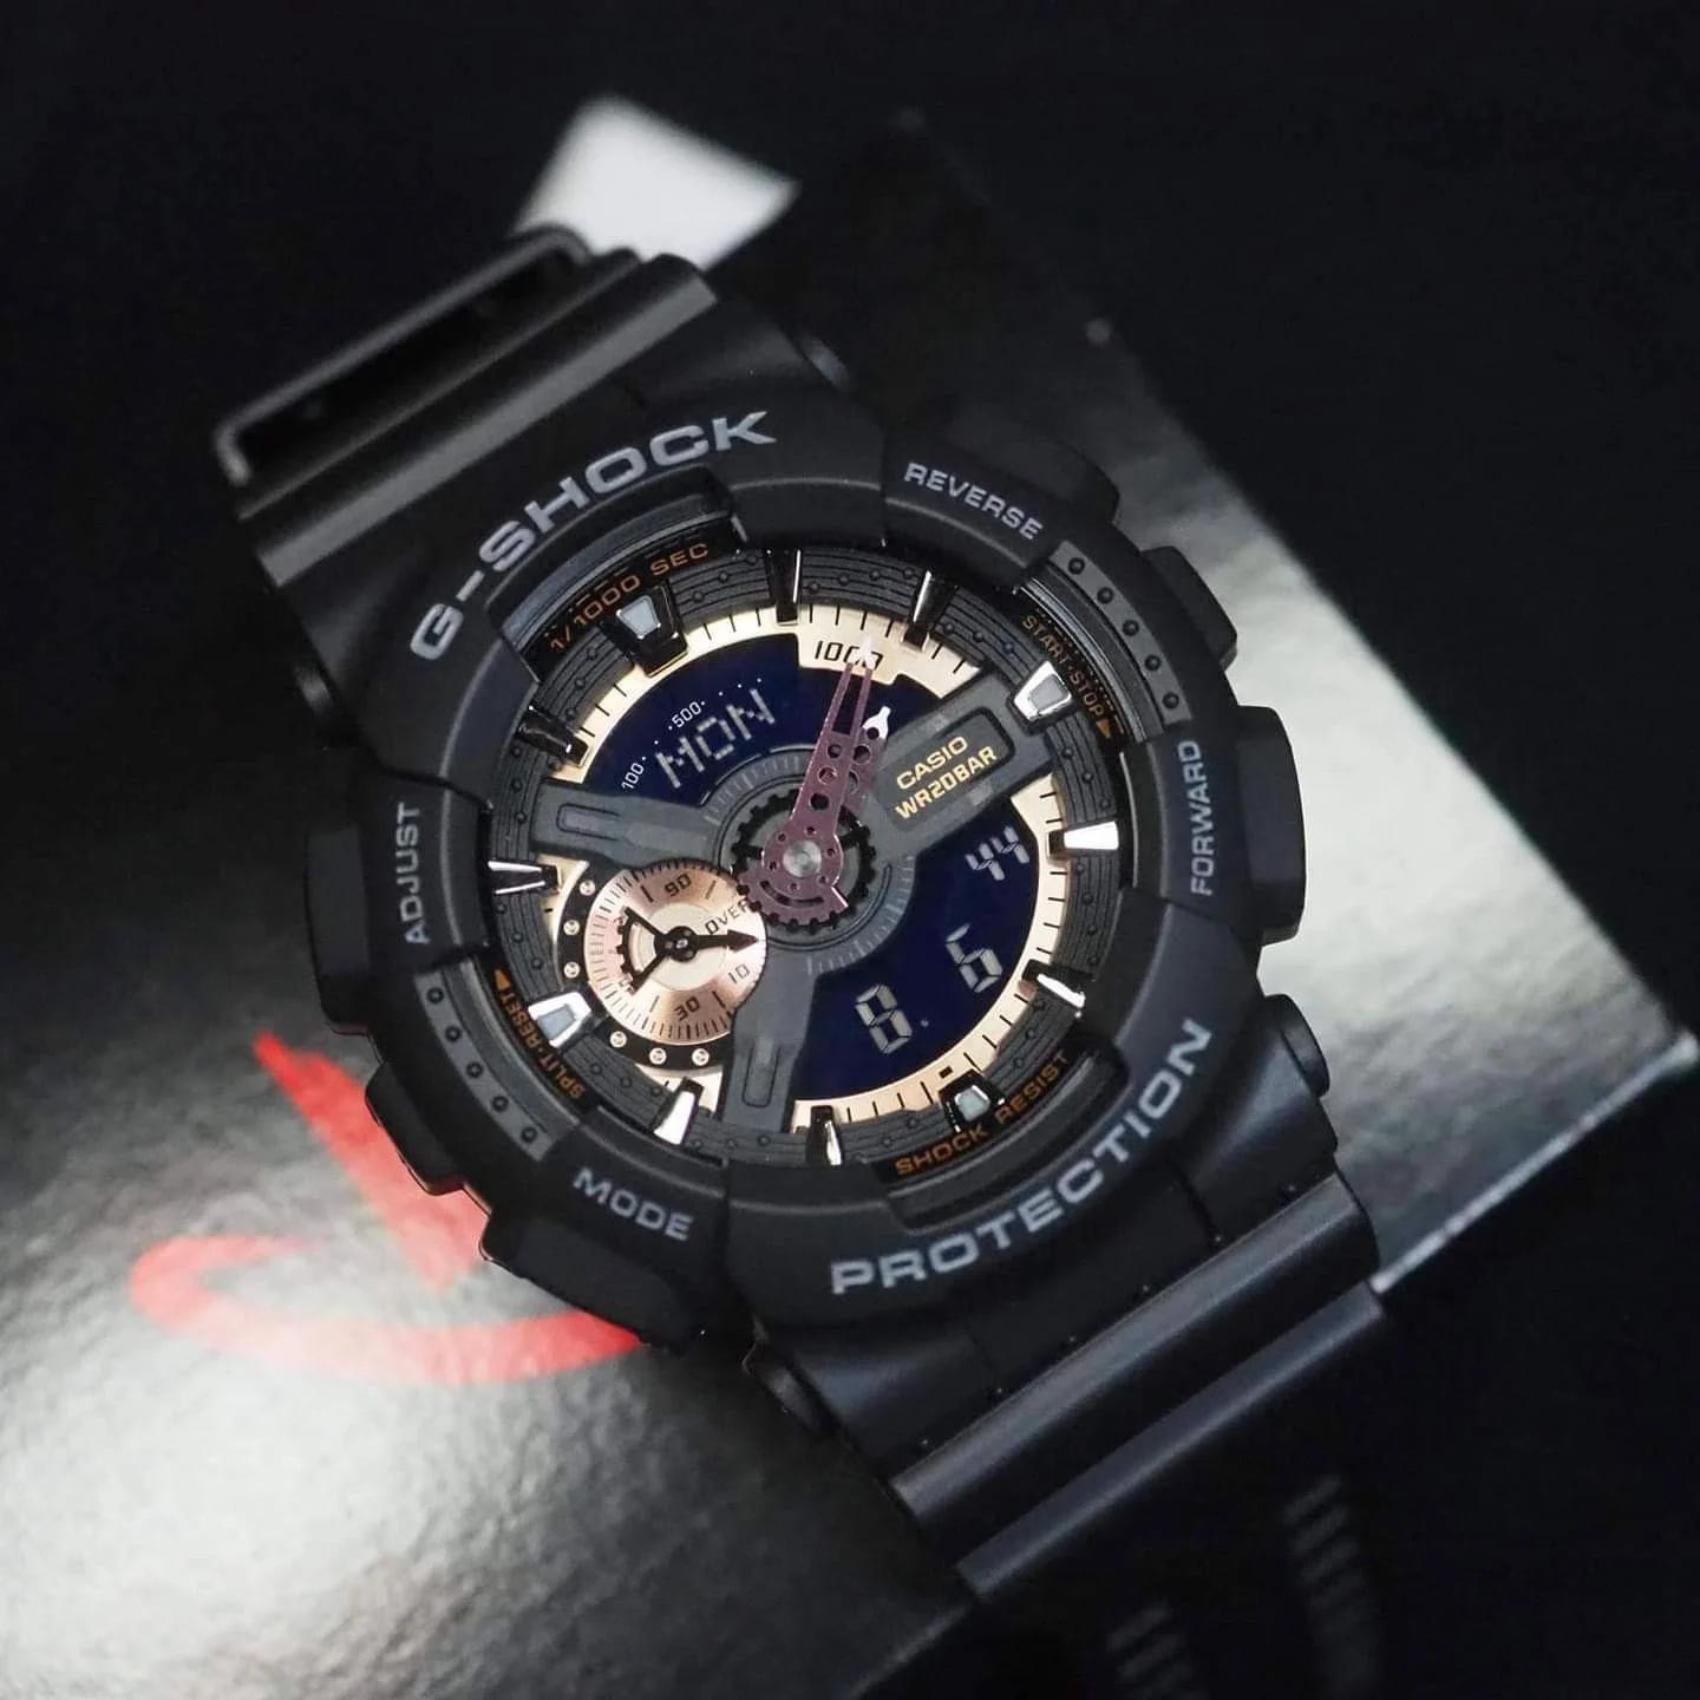 Καταδυτικό ρολόι χρονογράφος Casio G-Shock GA-110RG-1AER με μαύρο καουτσούκ λουράκ, μαύρο καντράν και στεγανότητα 20ATM-200Μ.